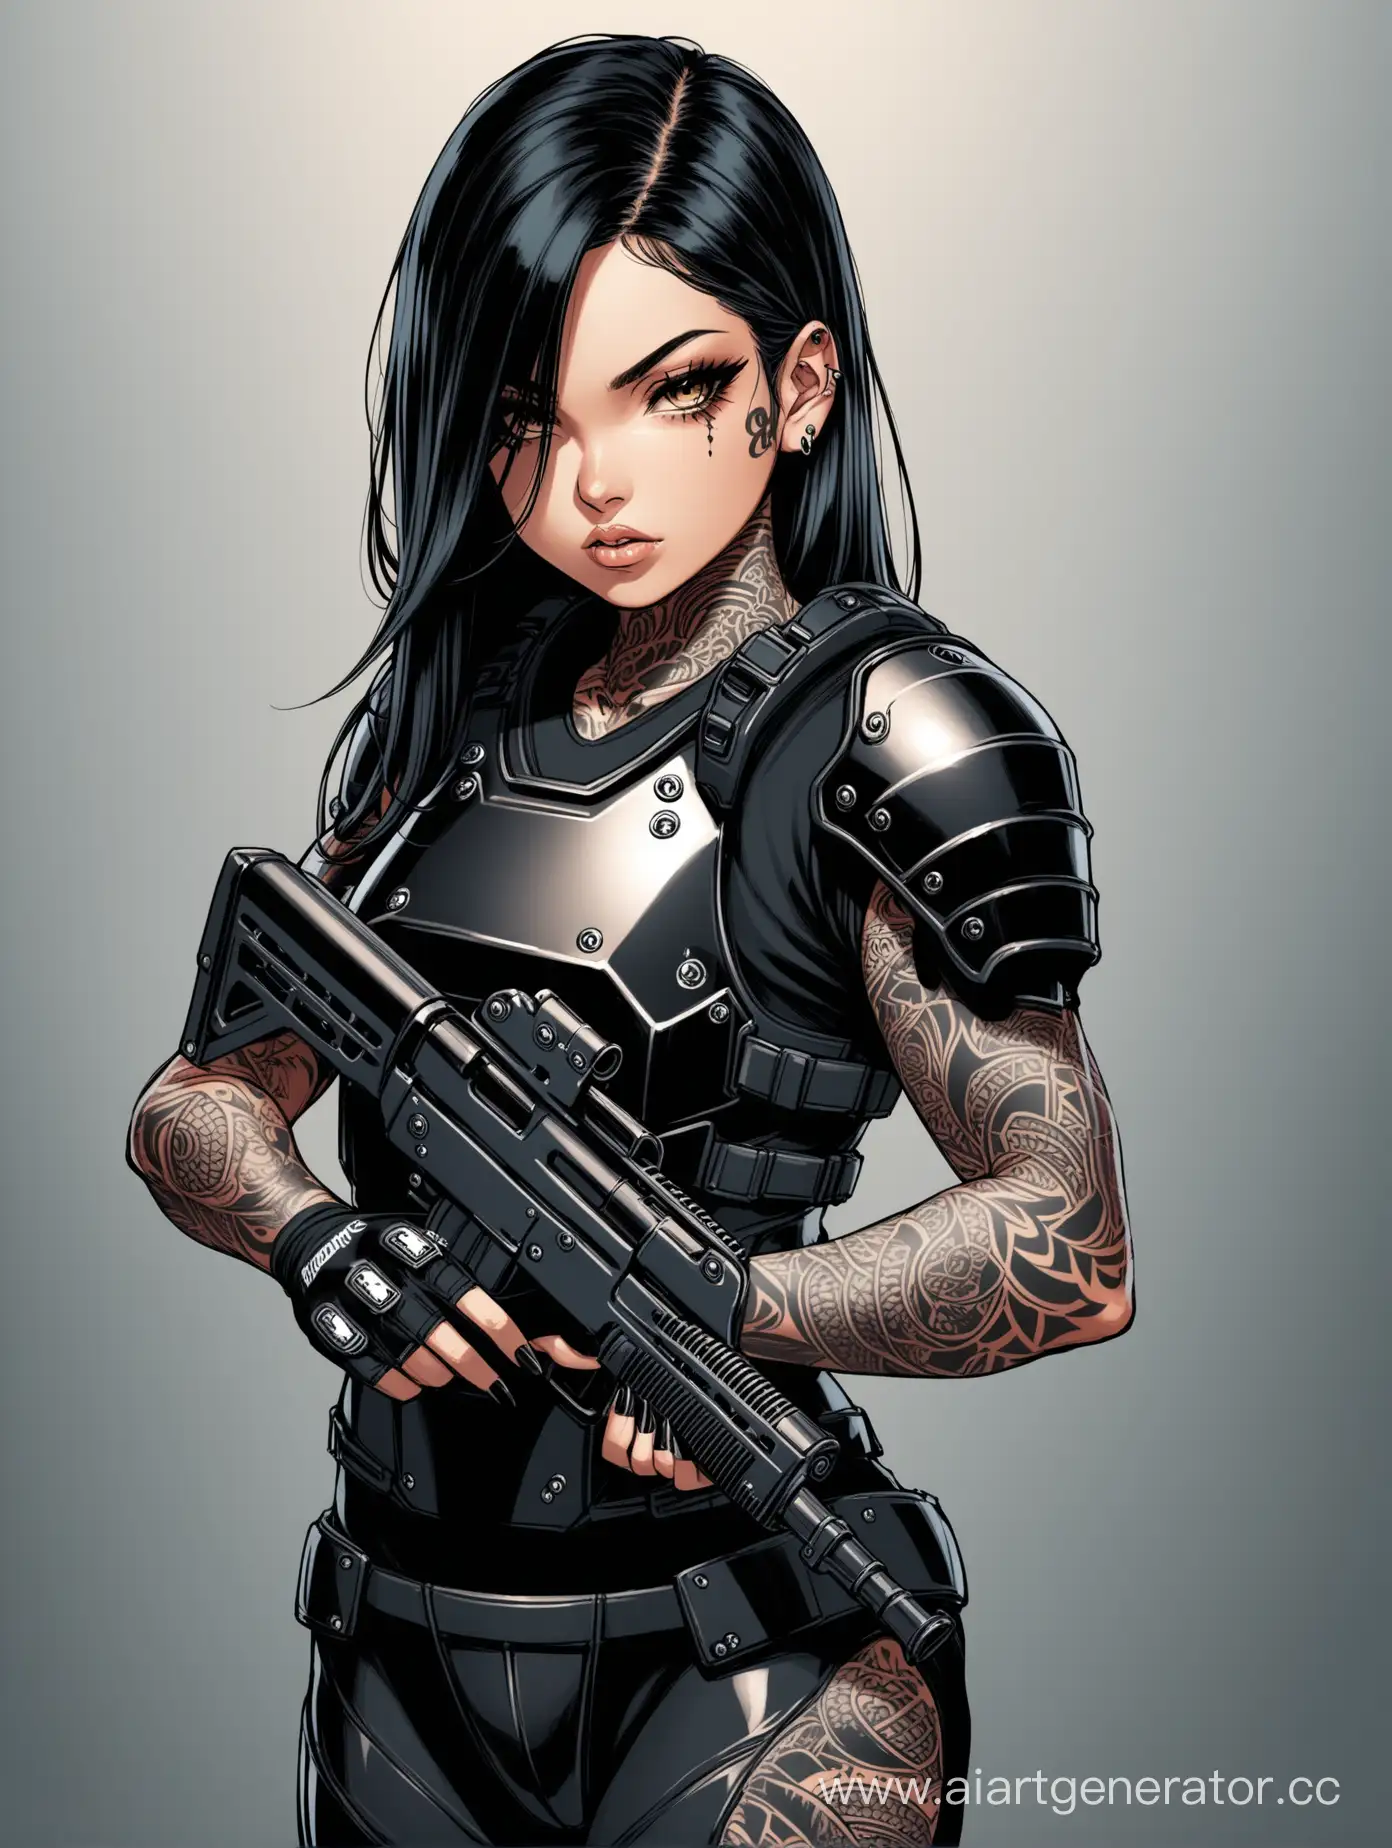 Девушка ганстер с черными длинными волосами, в узкой футболке с бронеразгрузкой, с татуировками на руках и шее, с оружием в руках